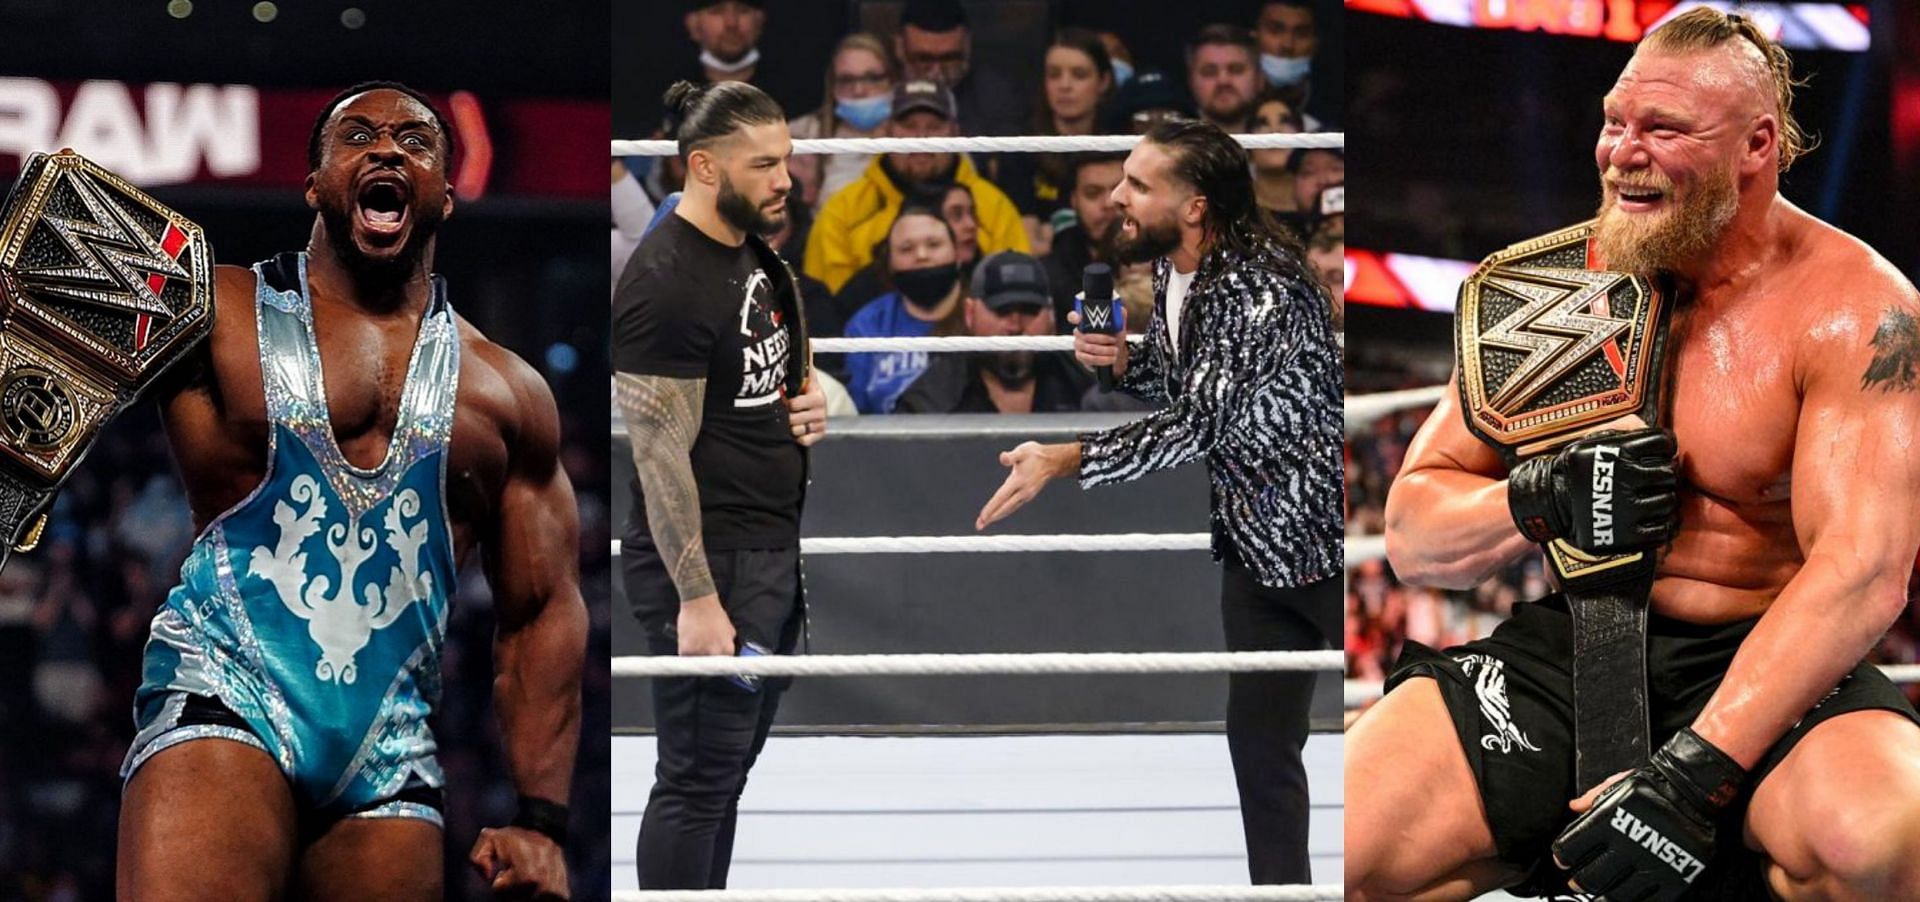 WWE का अगला इवेंट Royal Rumble धमाकेदार रह सकता है